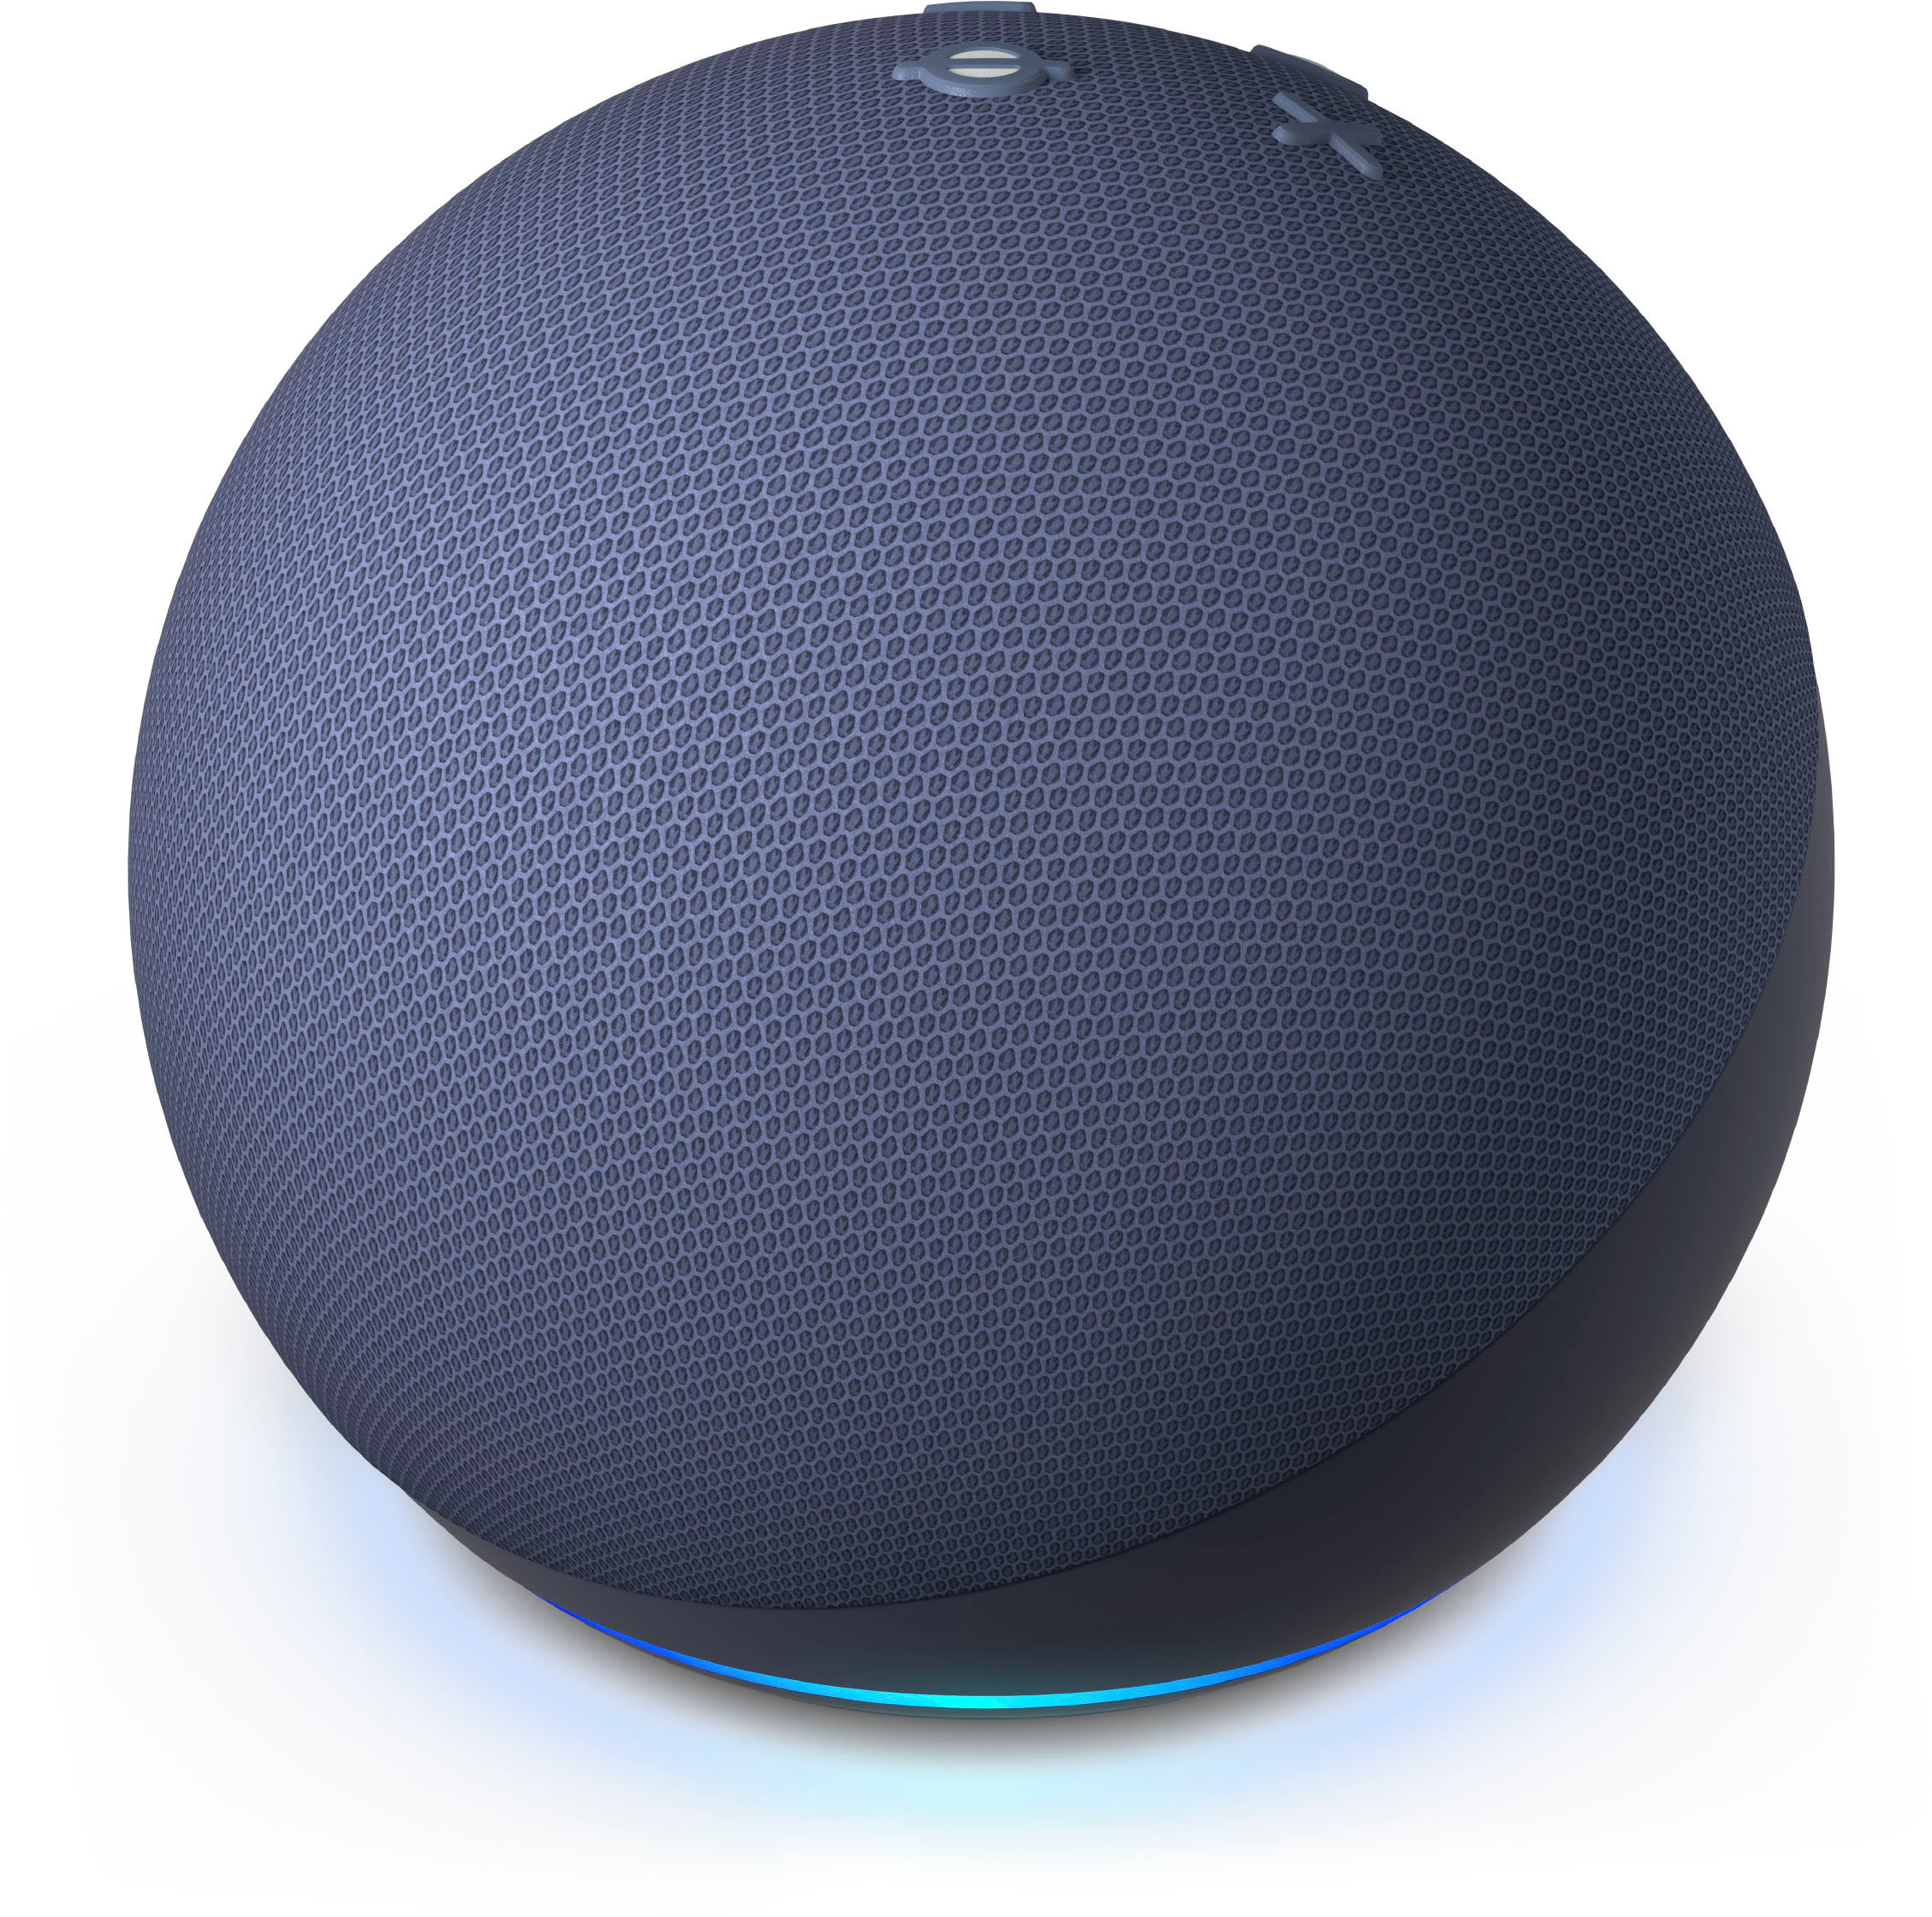  Echo Dot with Clock (5th Gen, 2022 Release) Smart Speaker with  Alexa - Cloud Blue